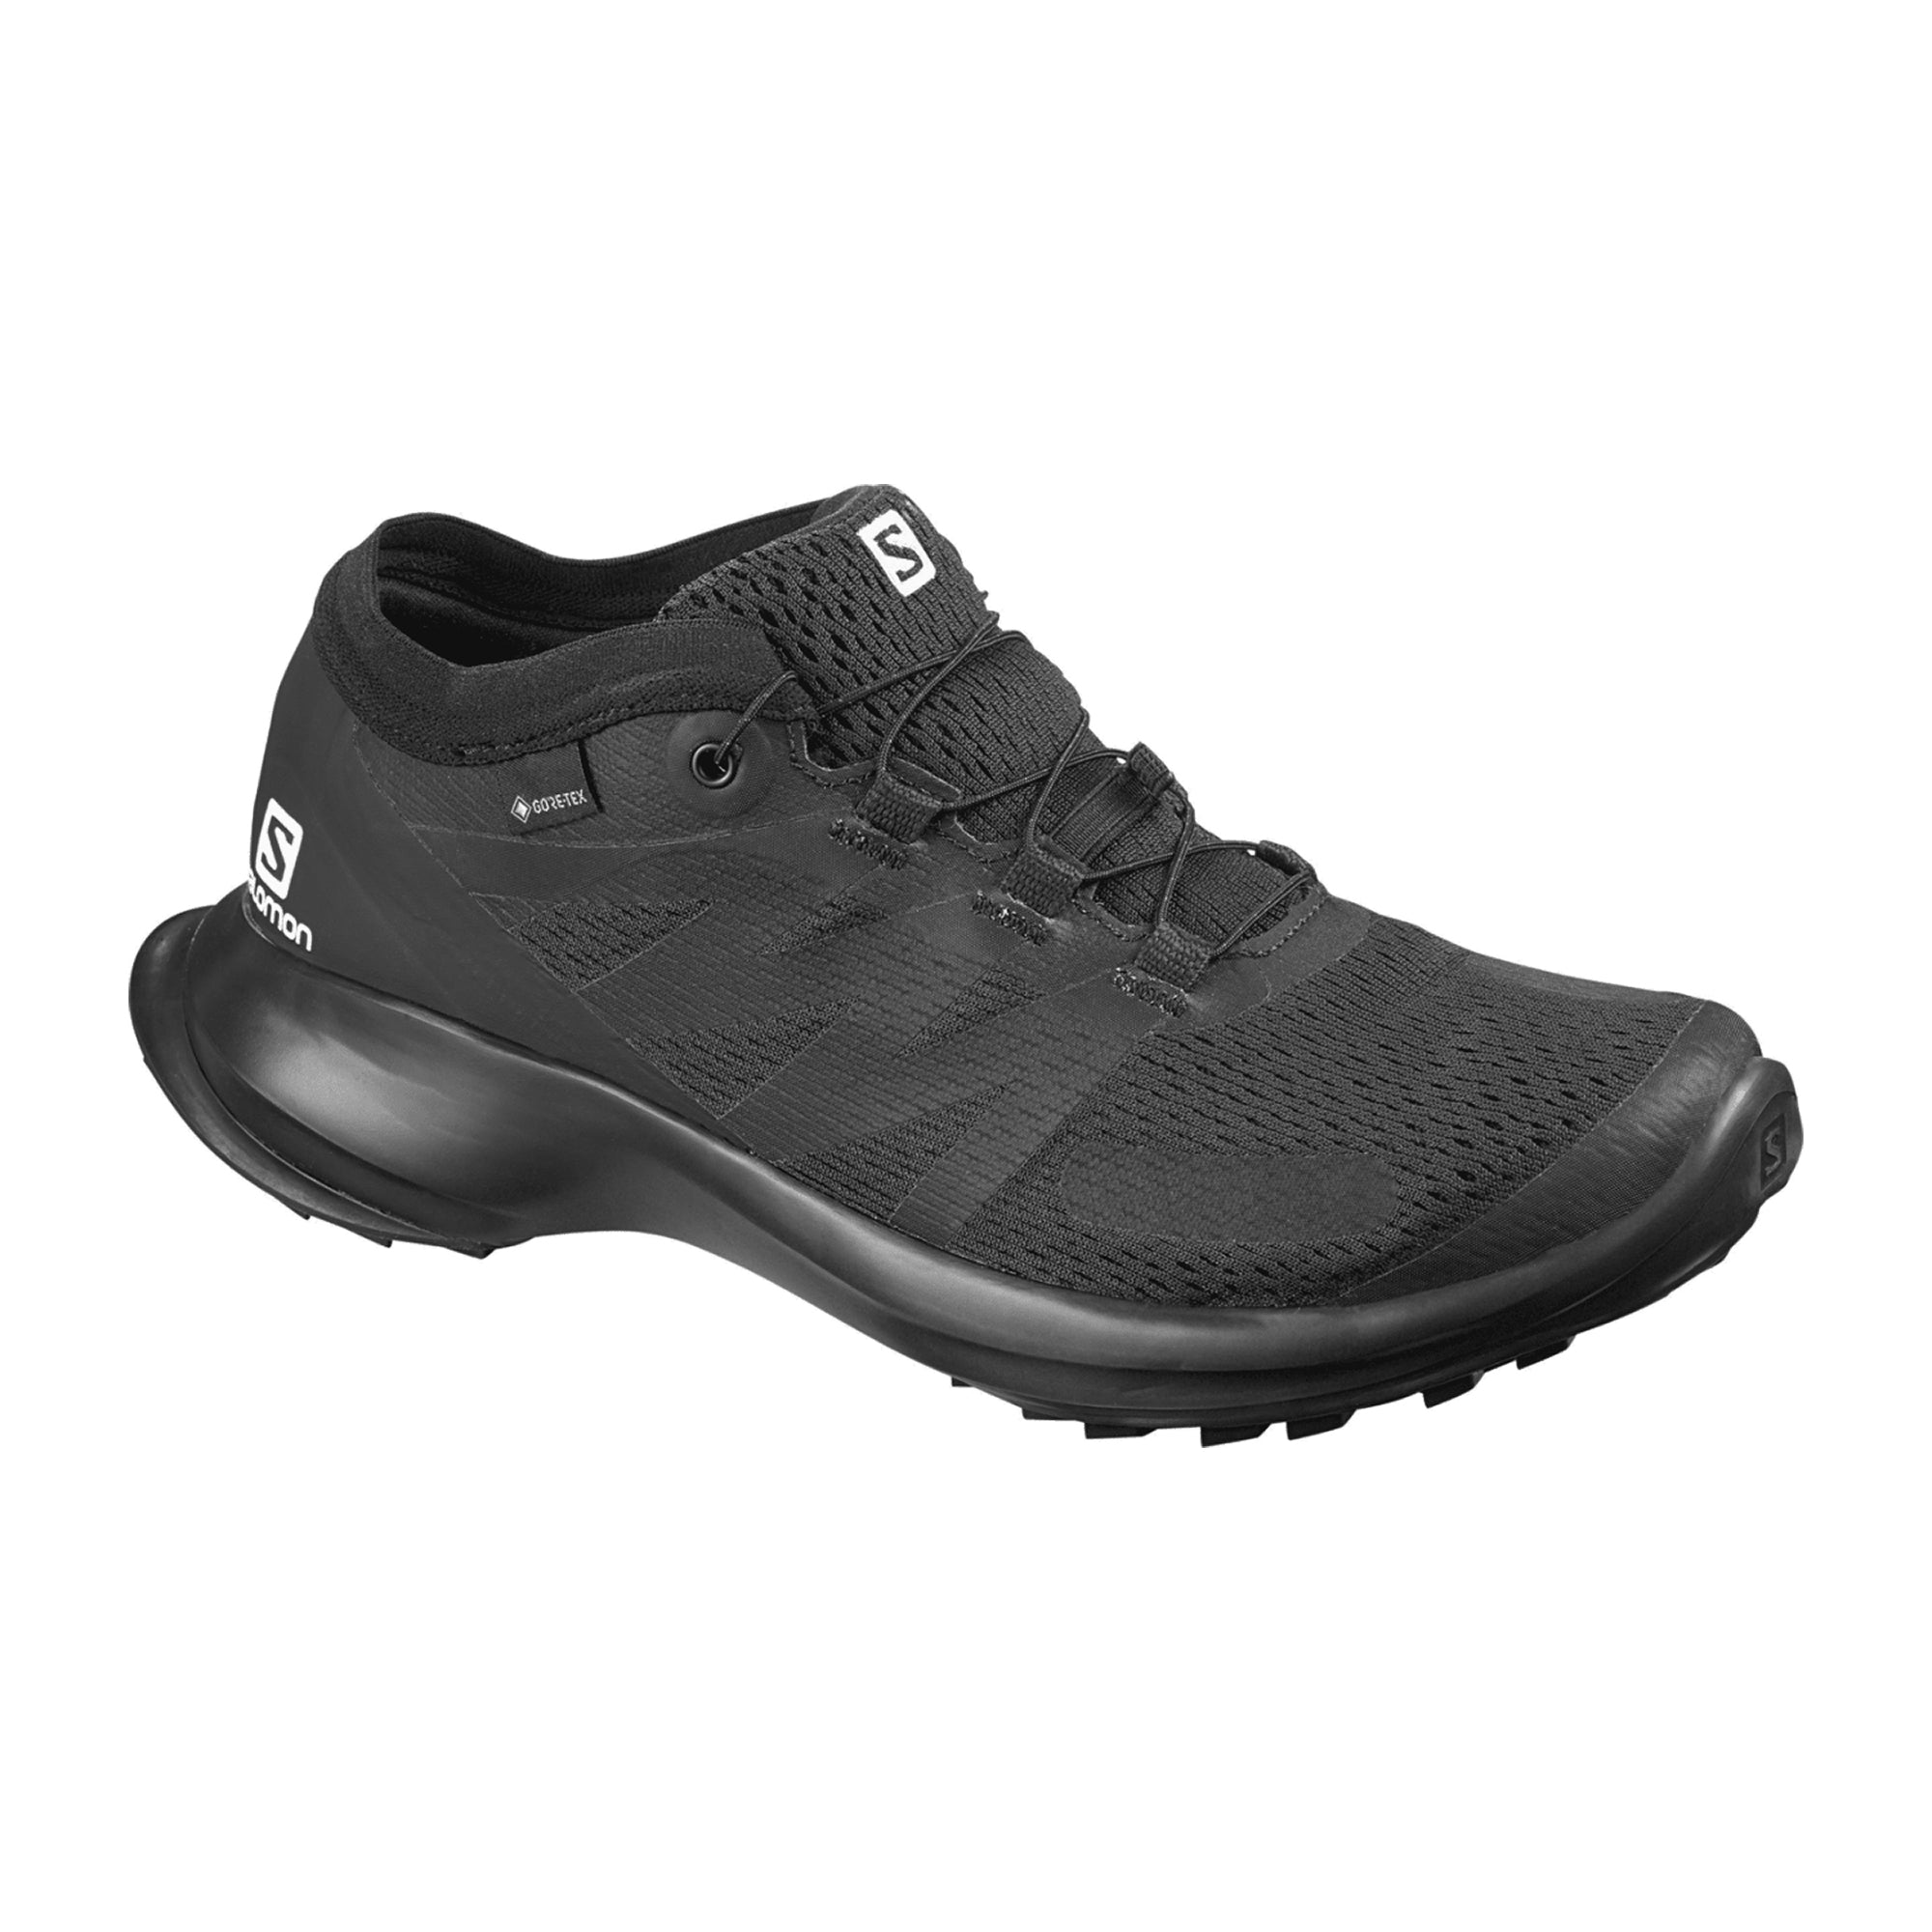 Salomon shoes SENSE FLOW GTX W Black/Black for women, black